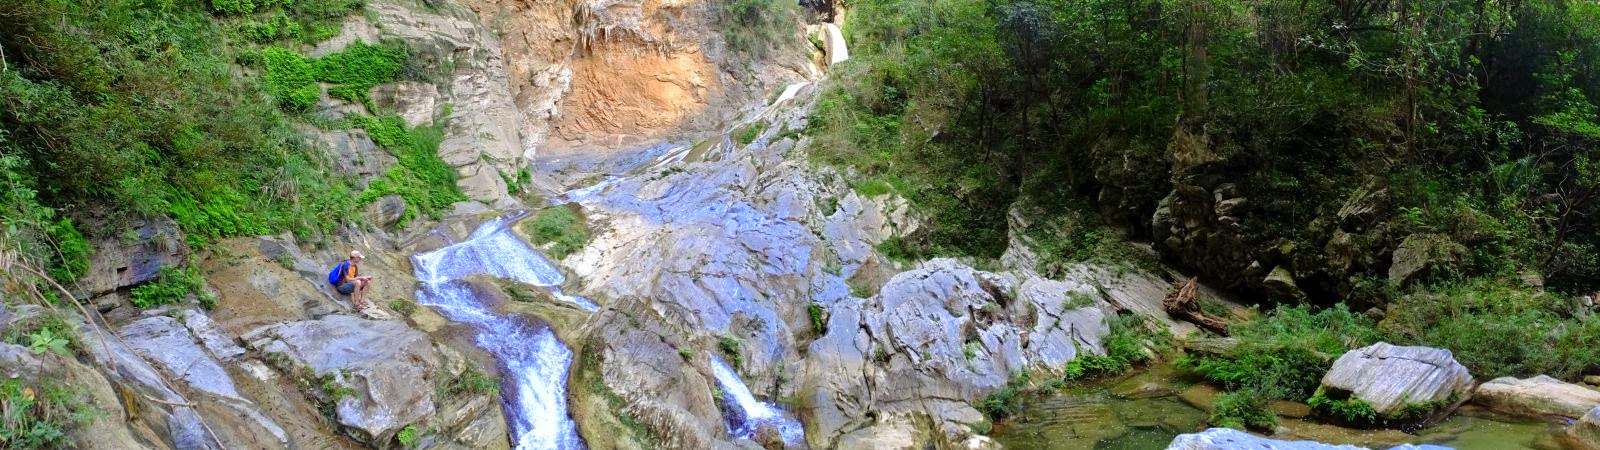 Salto del Caburní – Baden im Wasserfall